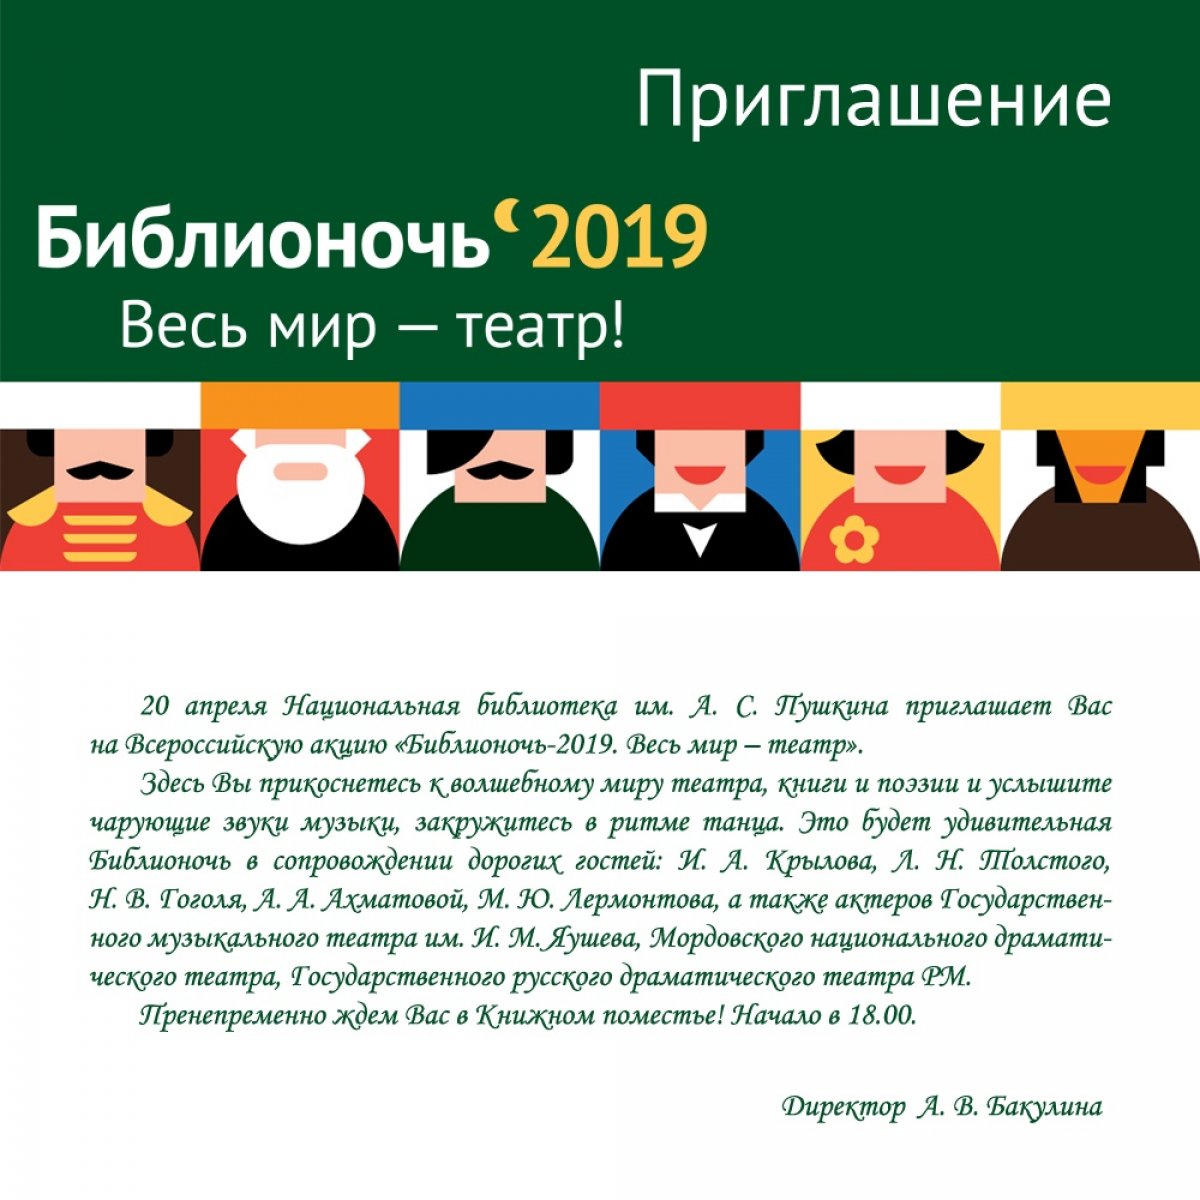 Национальная библиотека им. А. С. Пушкина приглашает на Всероссийскую акцию "Библионочь-2019. Весь мир - театр"🎭